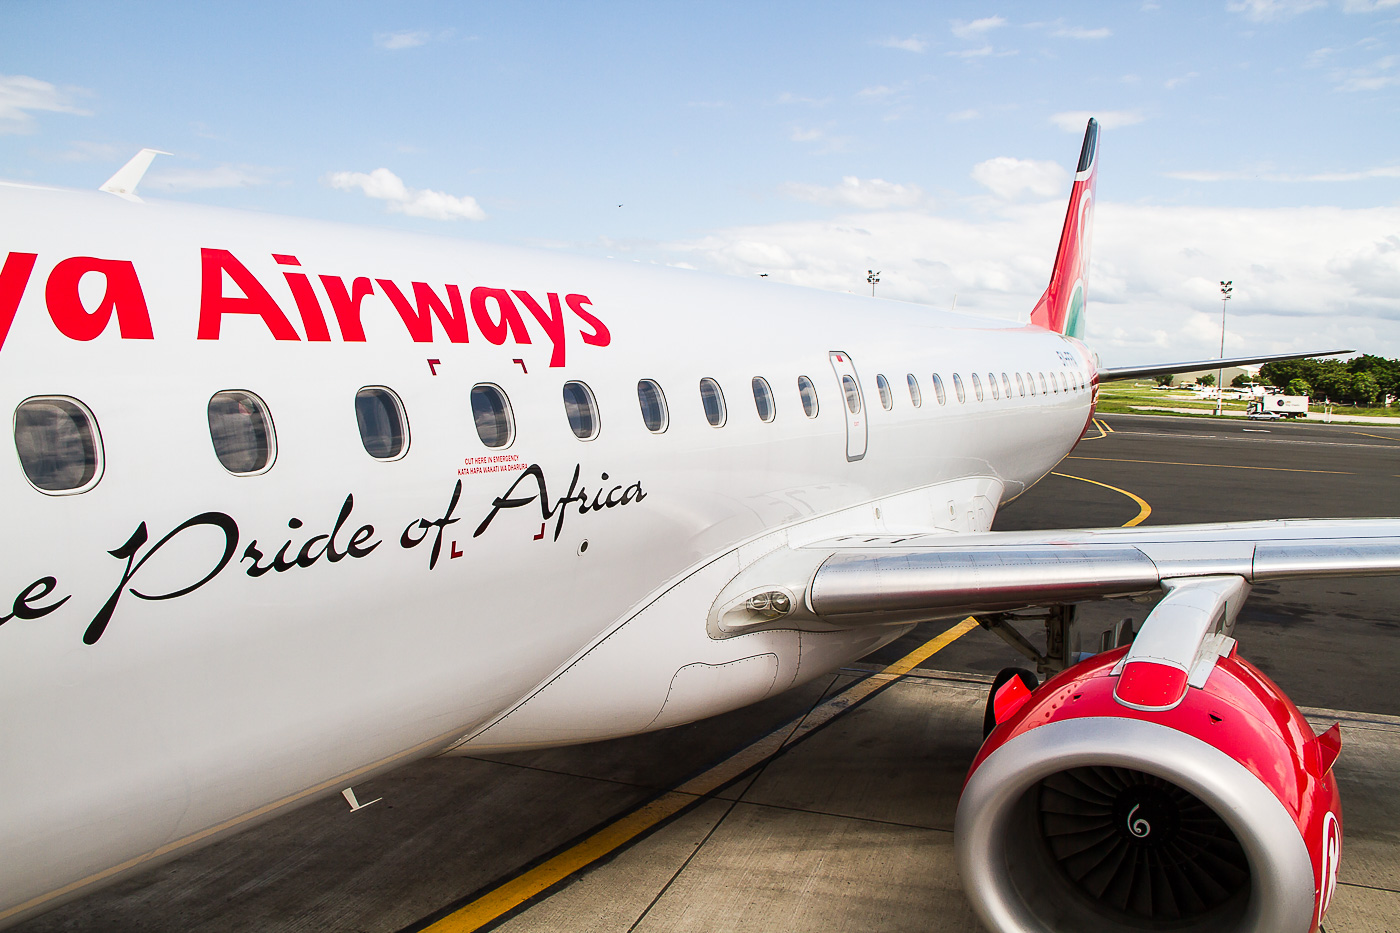 Kenya Airways, the pride of Africa | Airplane fighter 